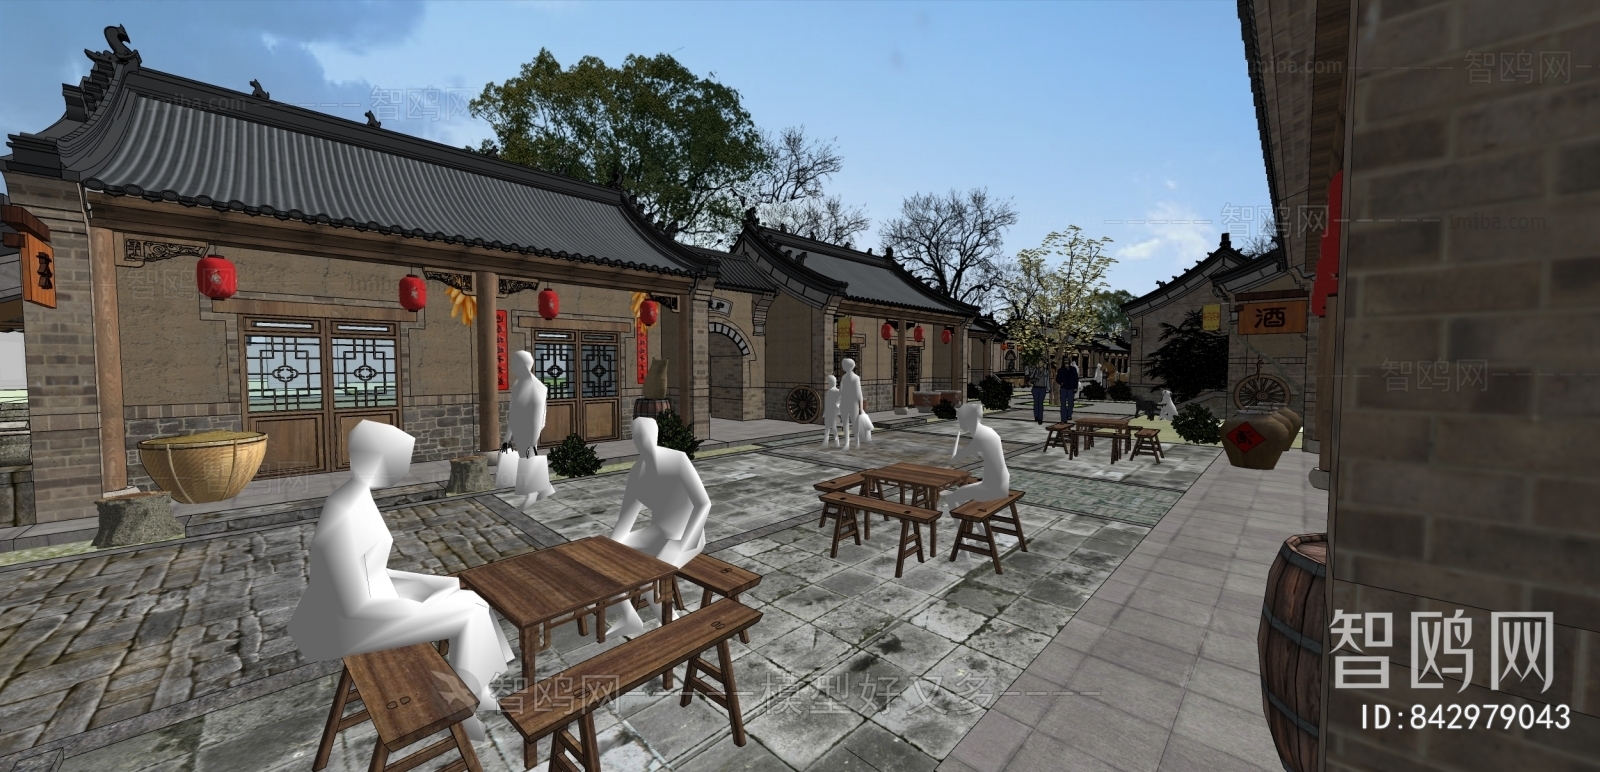 中式传统村落商业街区